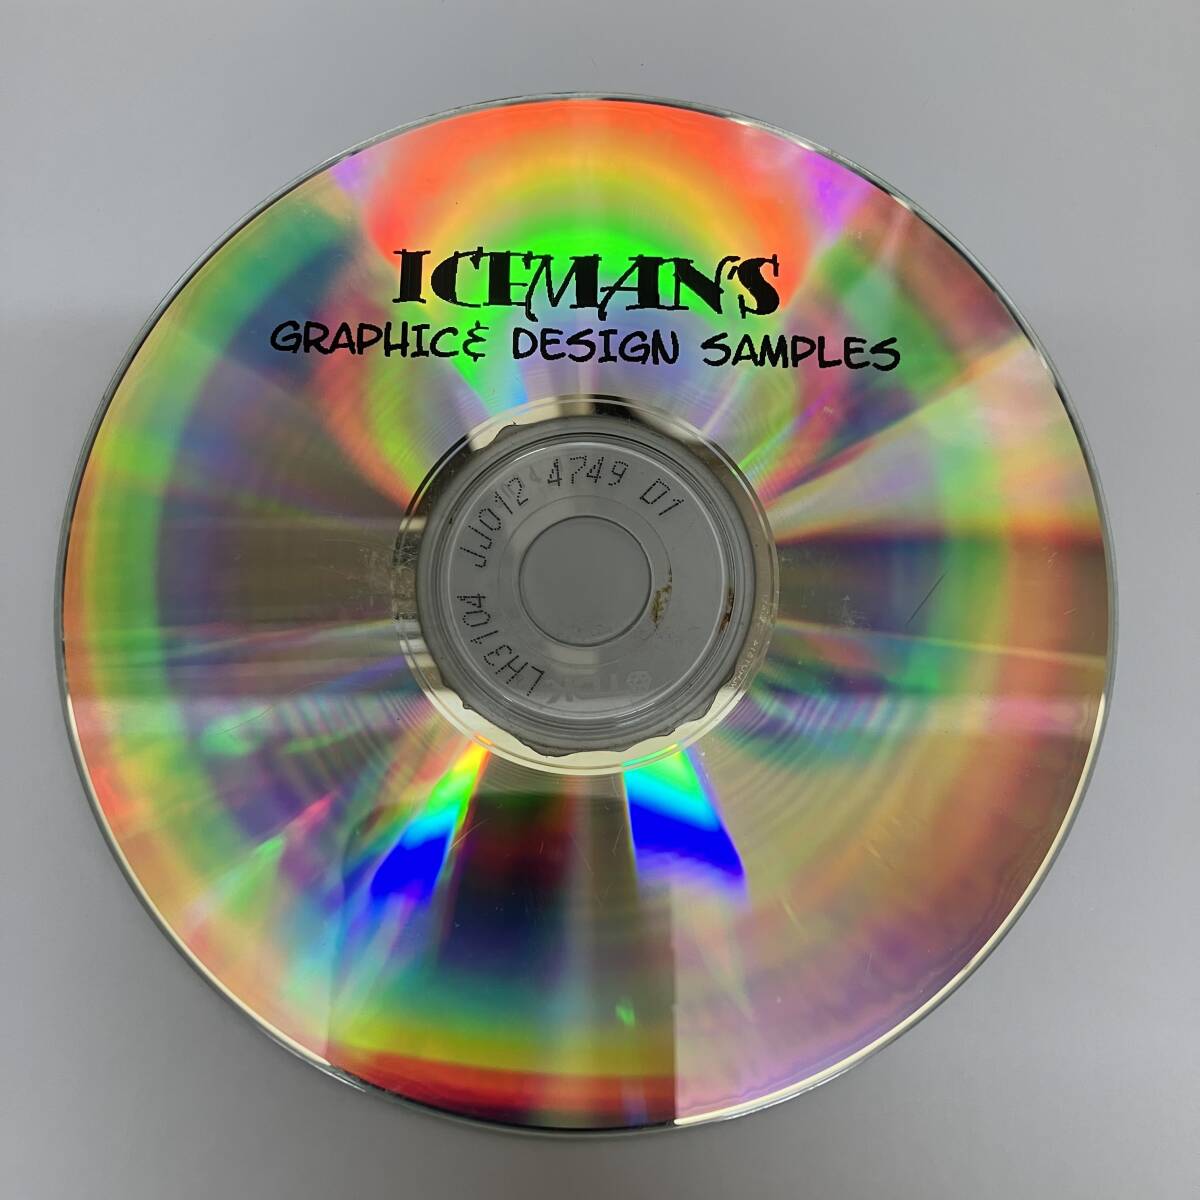 裸37 HIPHOP,R&B ICEMAN'S GRAPHIC & DESIGN SAMPLES シングル CD 中古品_画像1